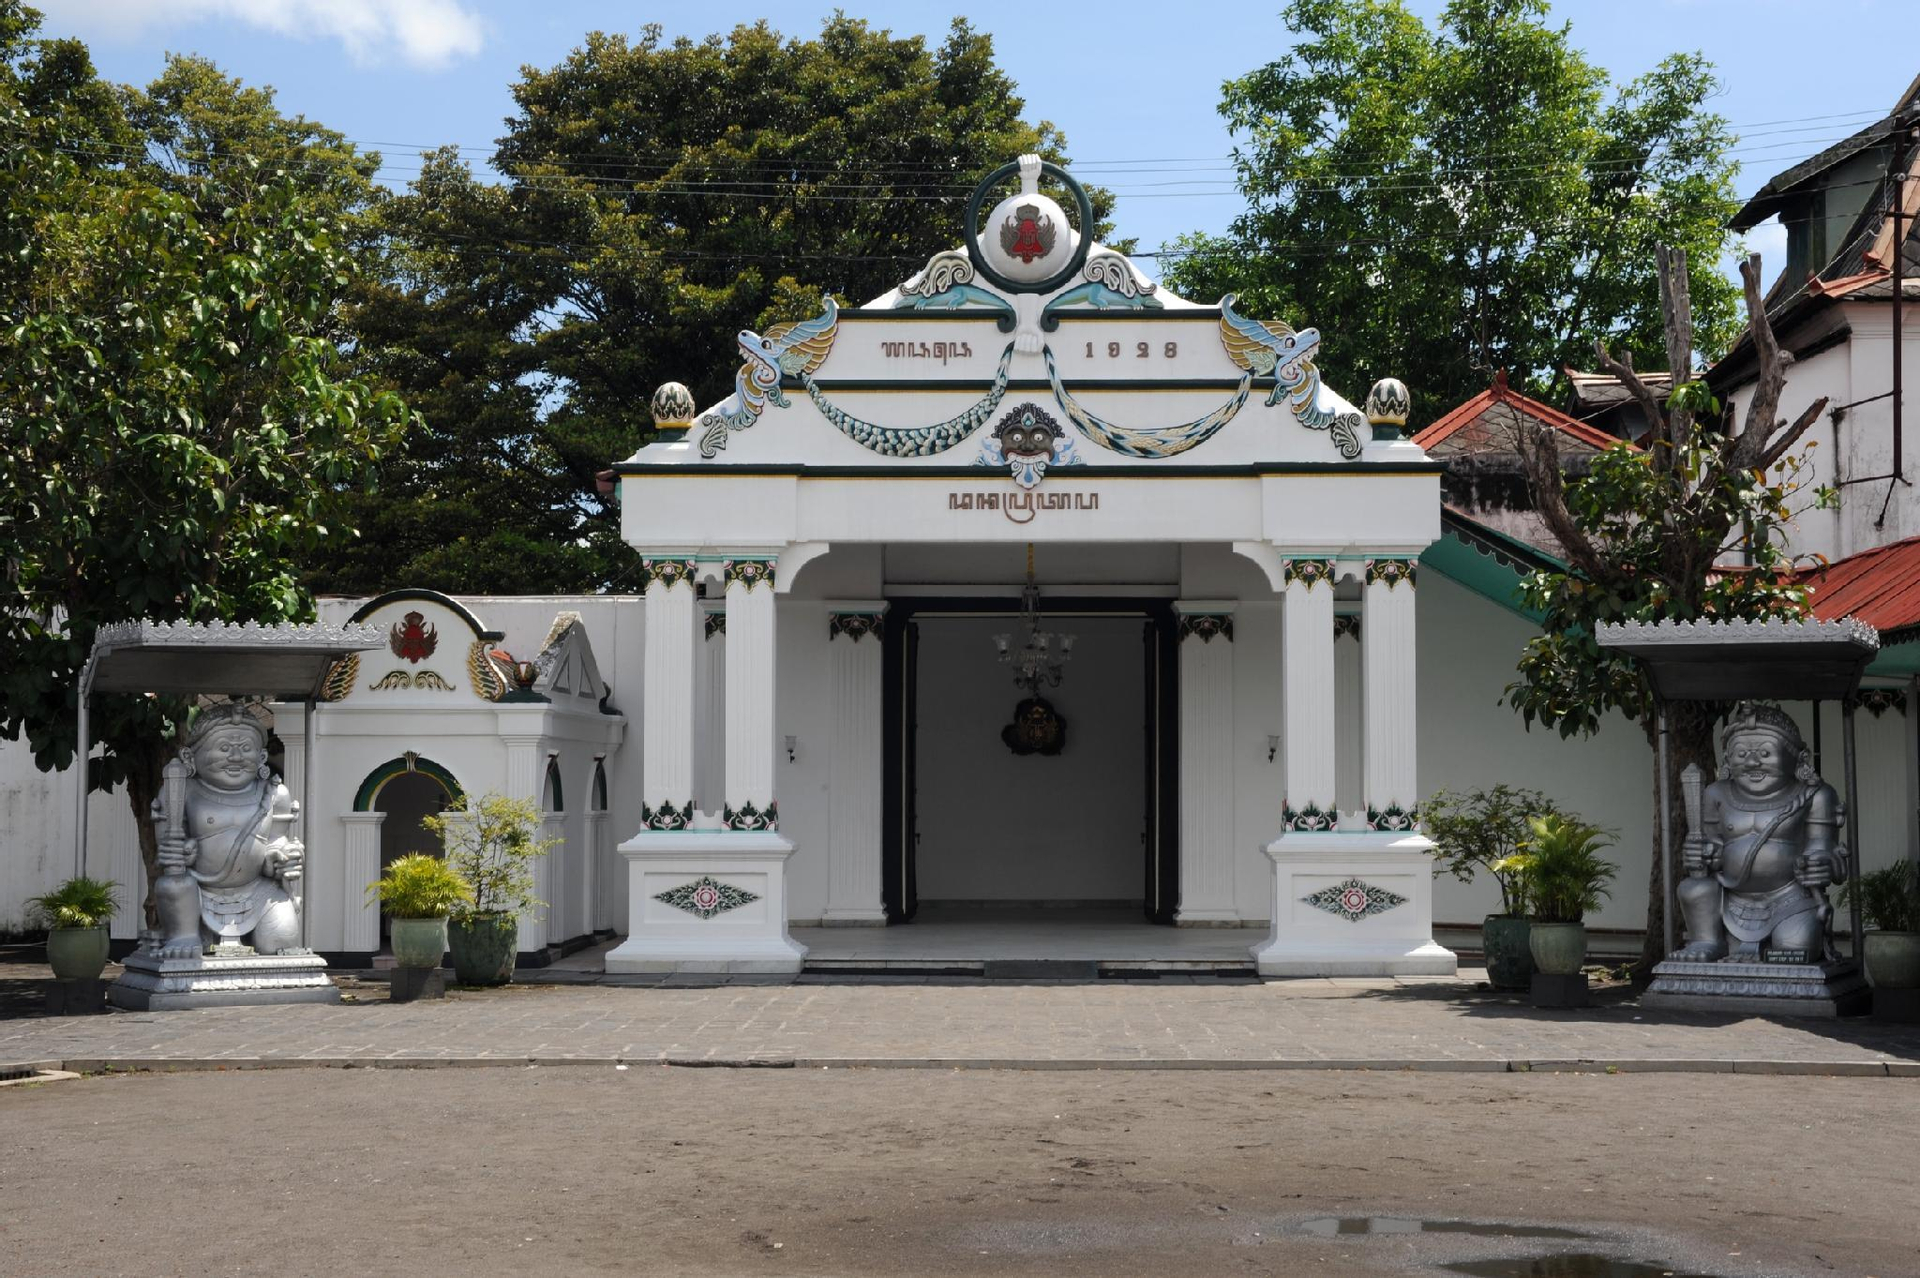 Exterior & Views 2, Hotel Mataram Malioboro, Yogyakarta